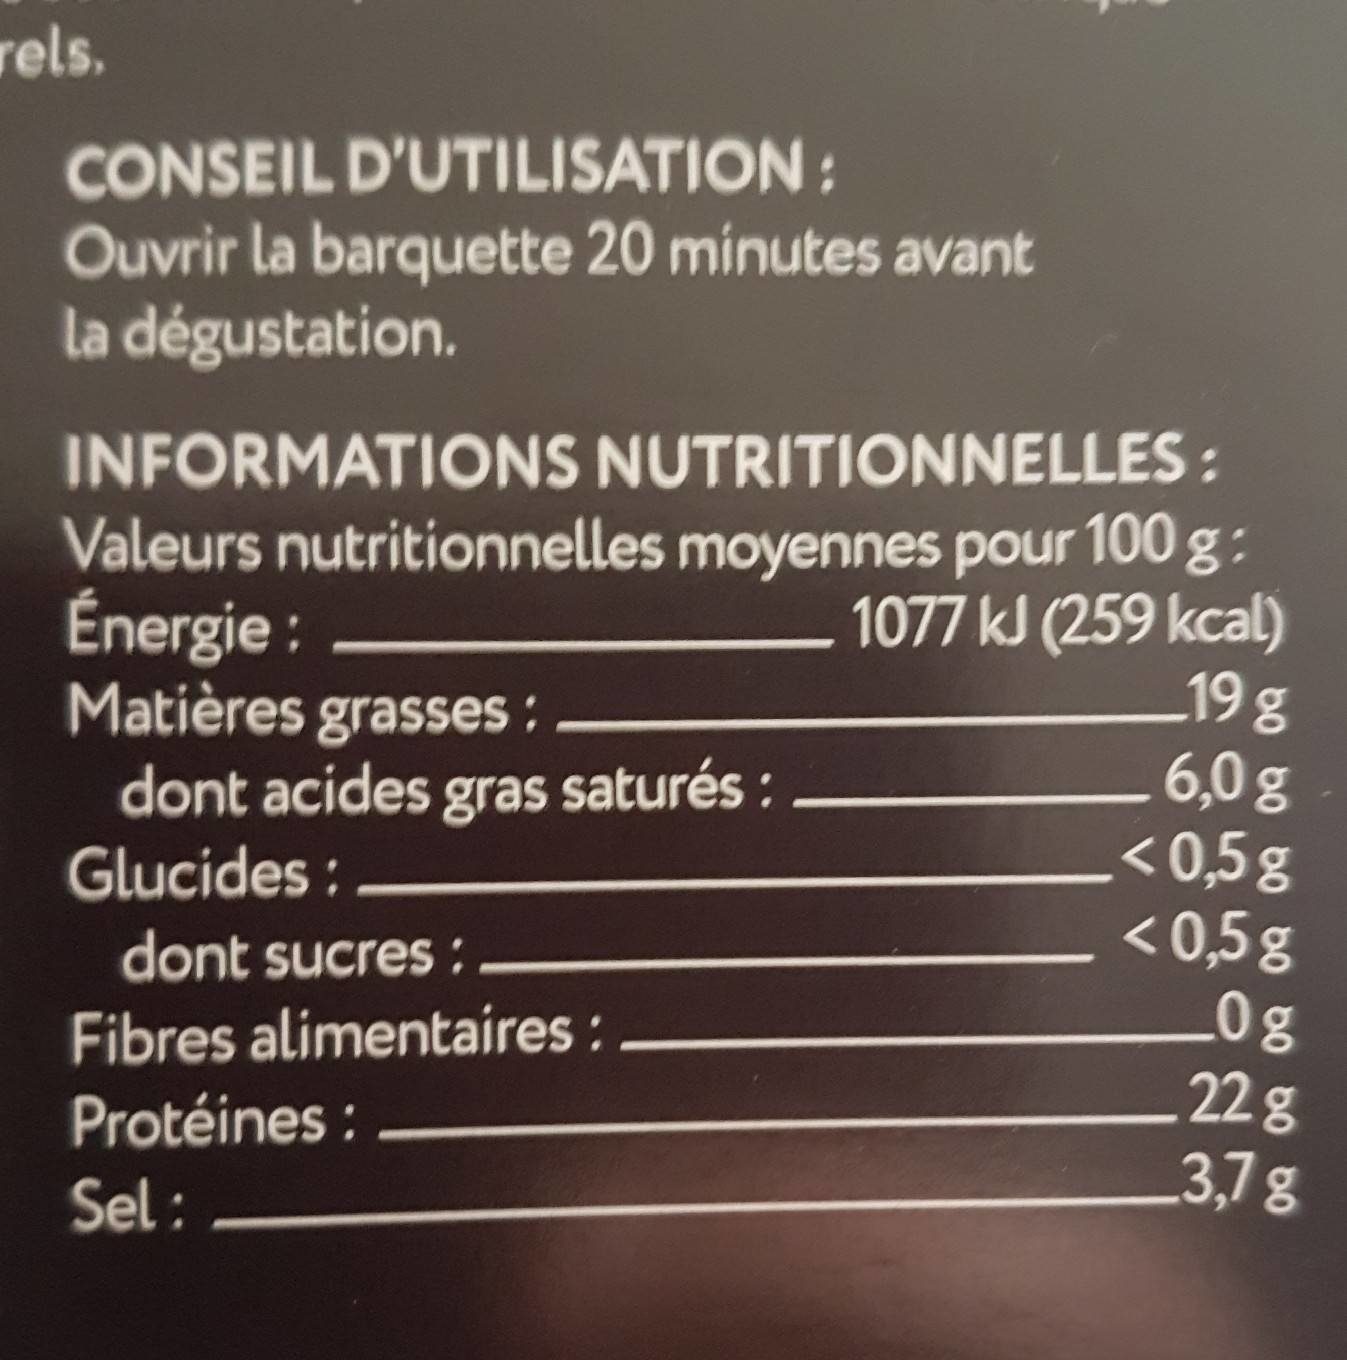 Jambon ibérique - Nutrition facts - fr